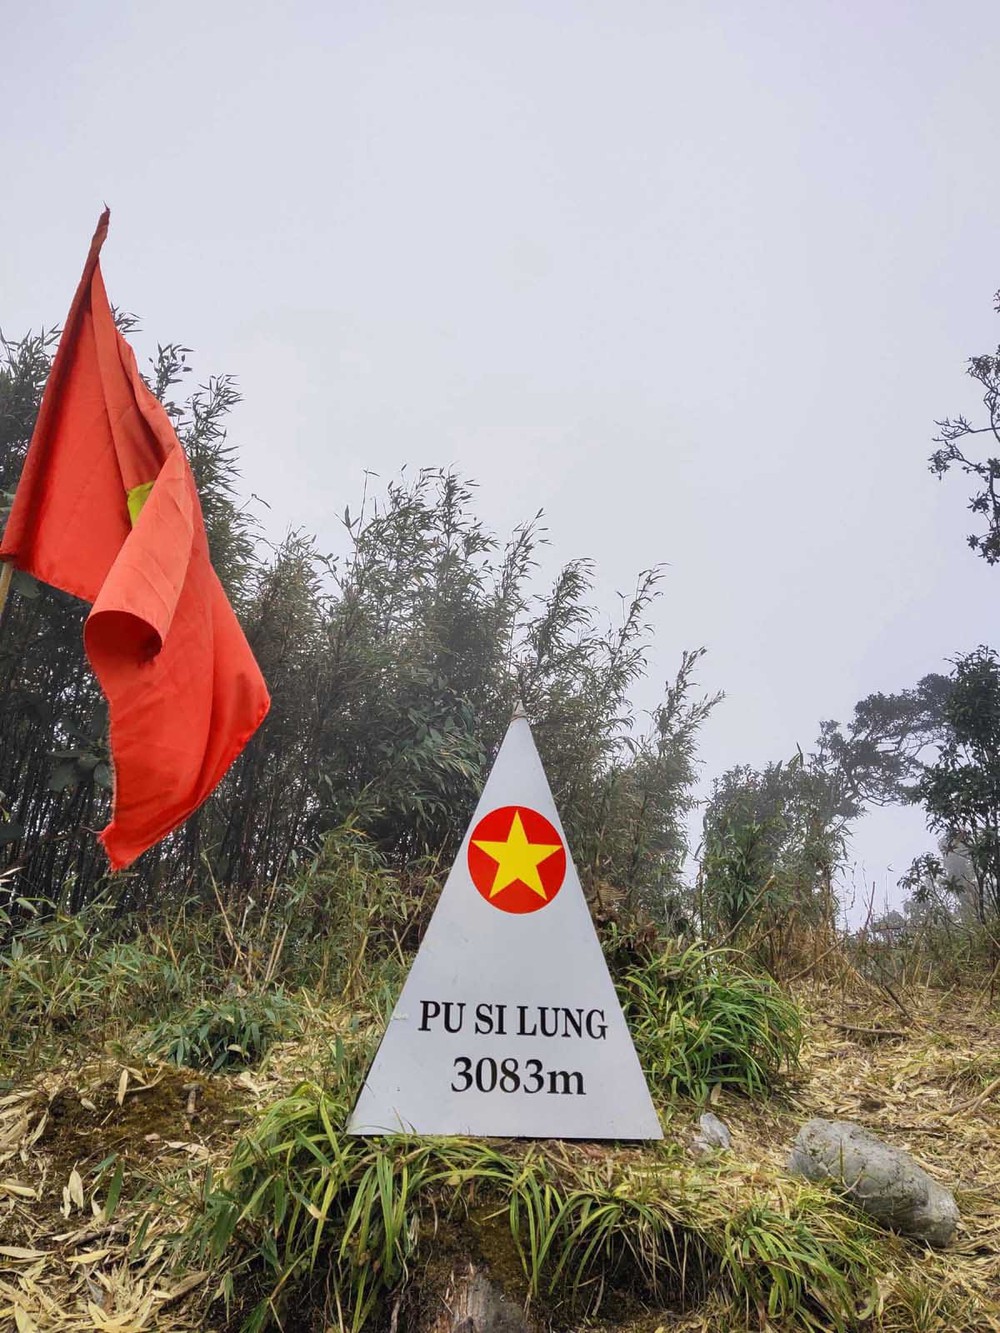 Chinh phục “nóc nhà biên giới” của Việt Nam ngay miền Bắc, gặp gỡ cặp vợ chồng “người rừng” sống trên núi gần 20 năm - Ảnh 1.